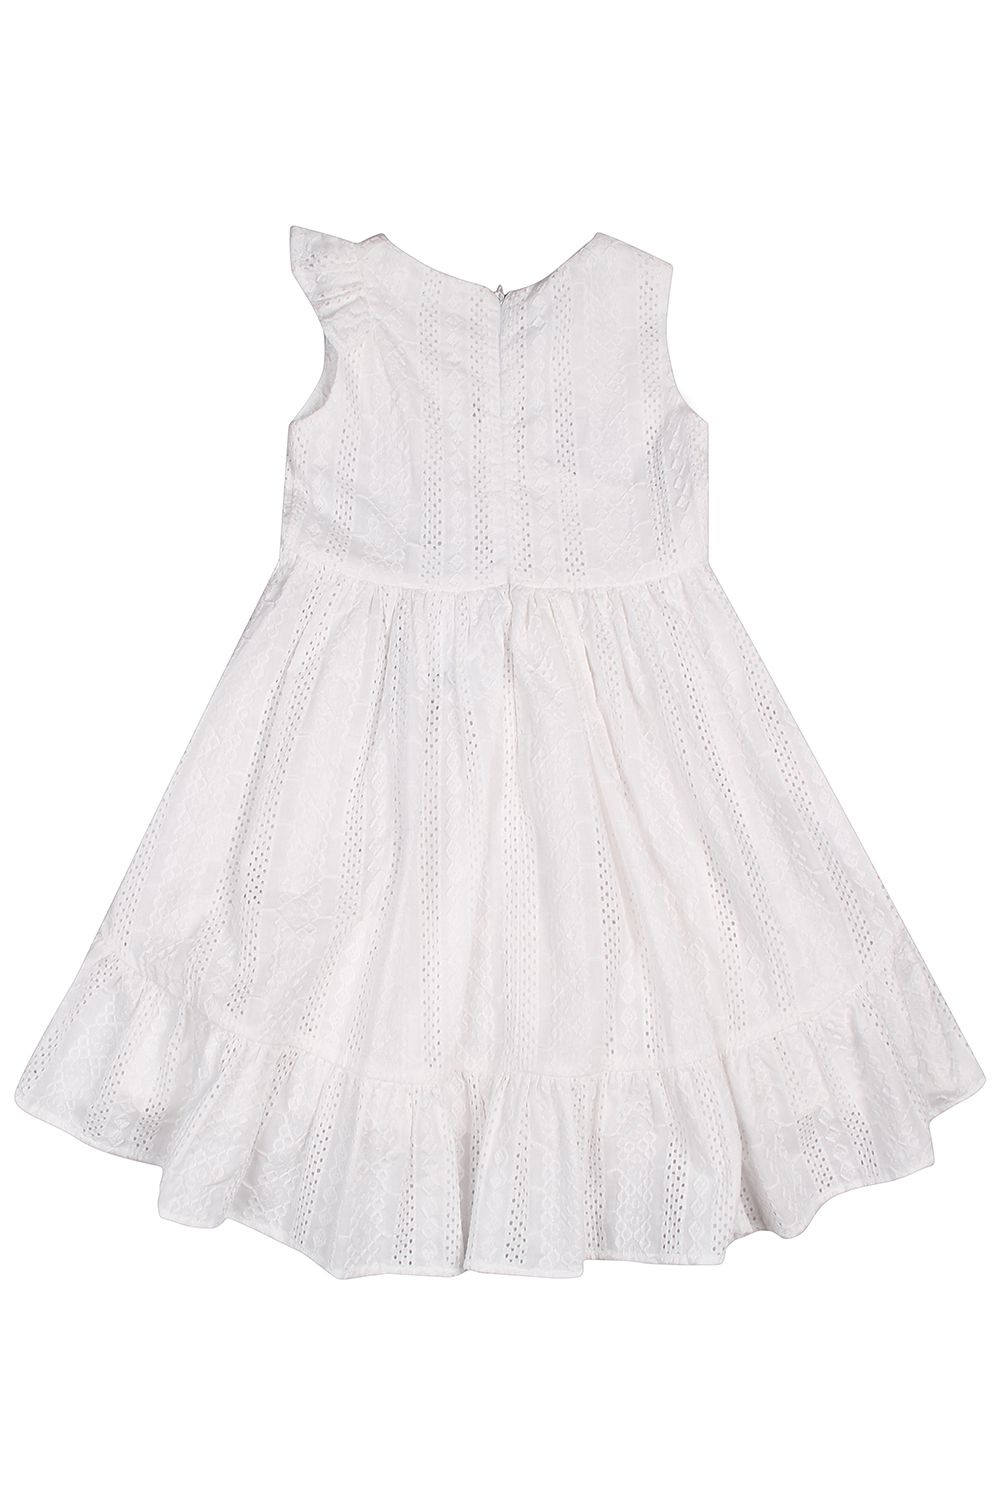 Платье Y-clu', размер 98, цвет белый YB13649 - фото 3